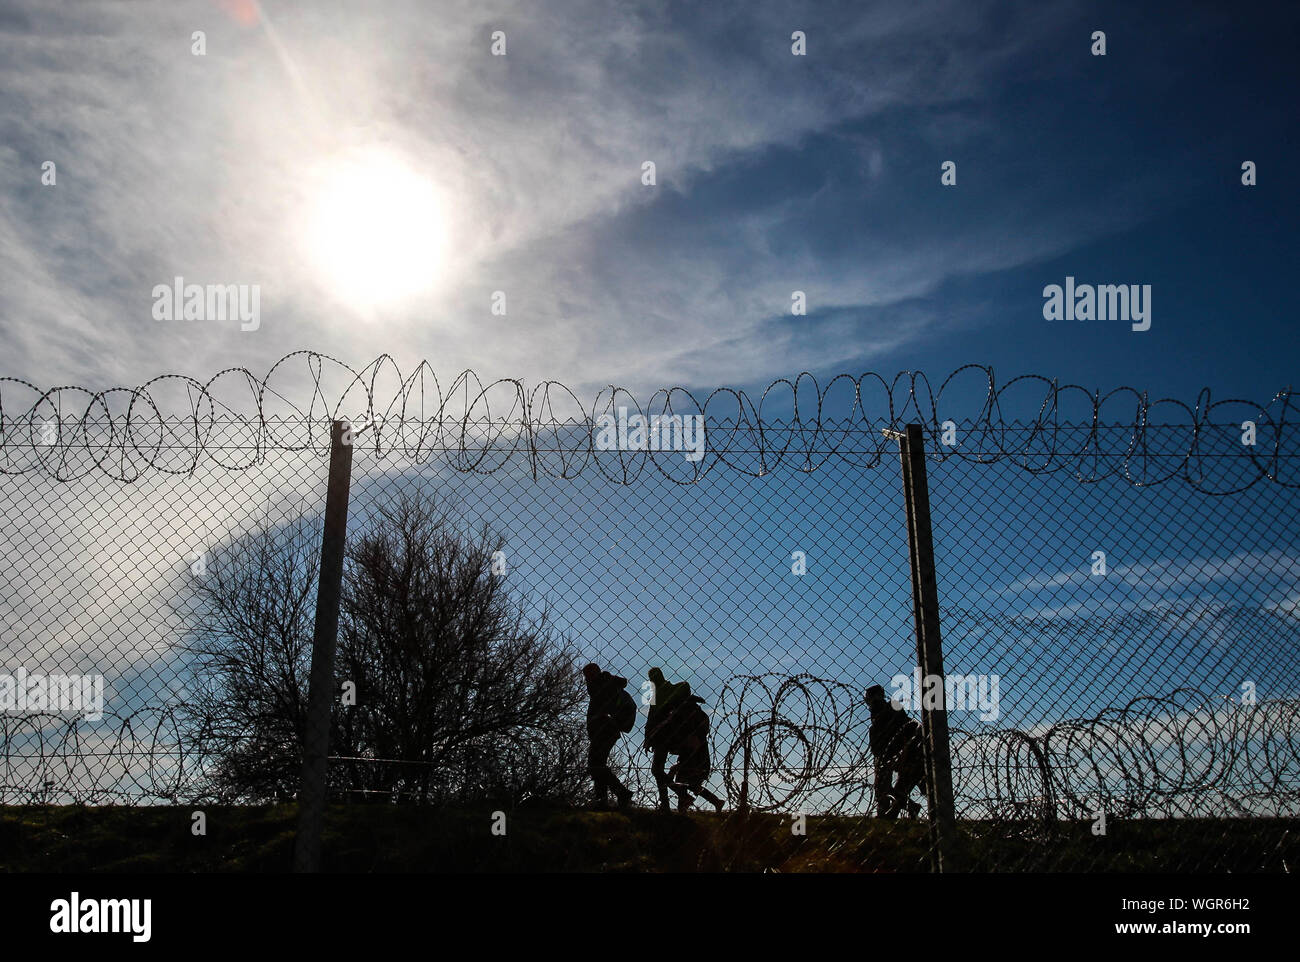 Refugees Running On Border Against Sky Stock Photo